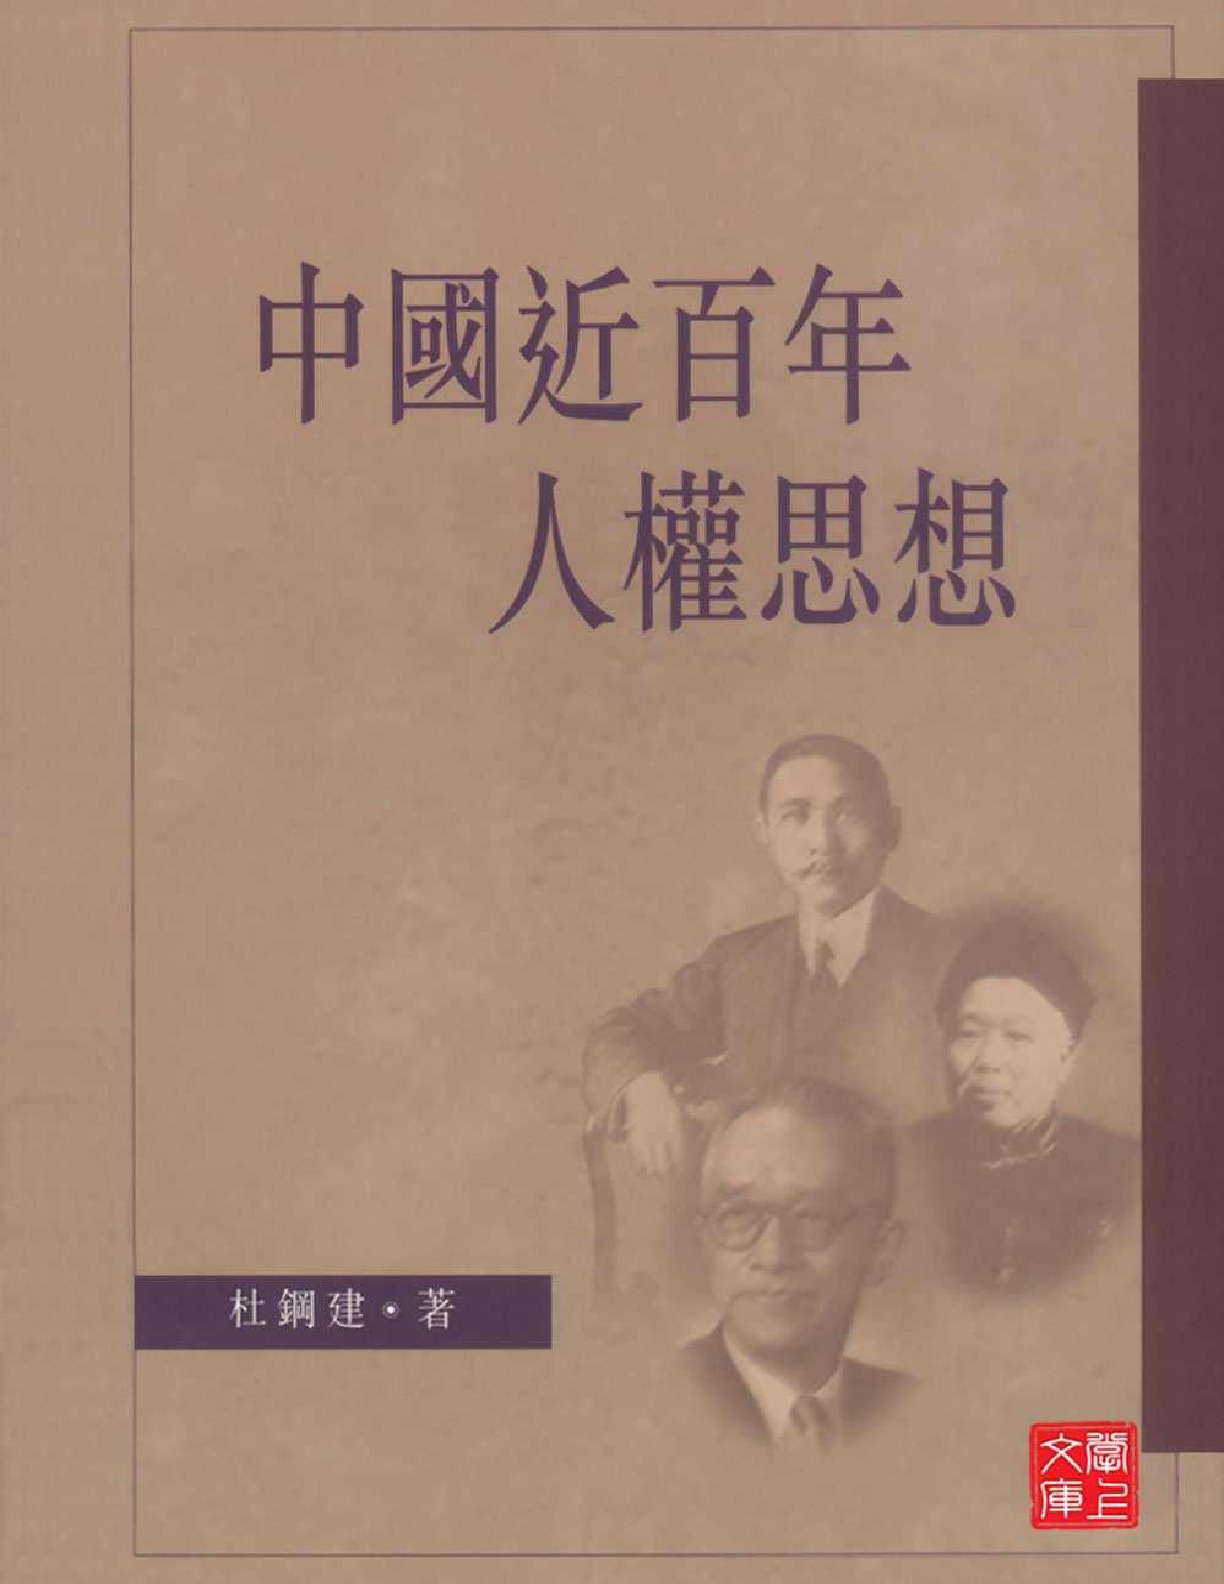 中国近百年的人权思想 – 杜钢建